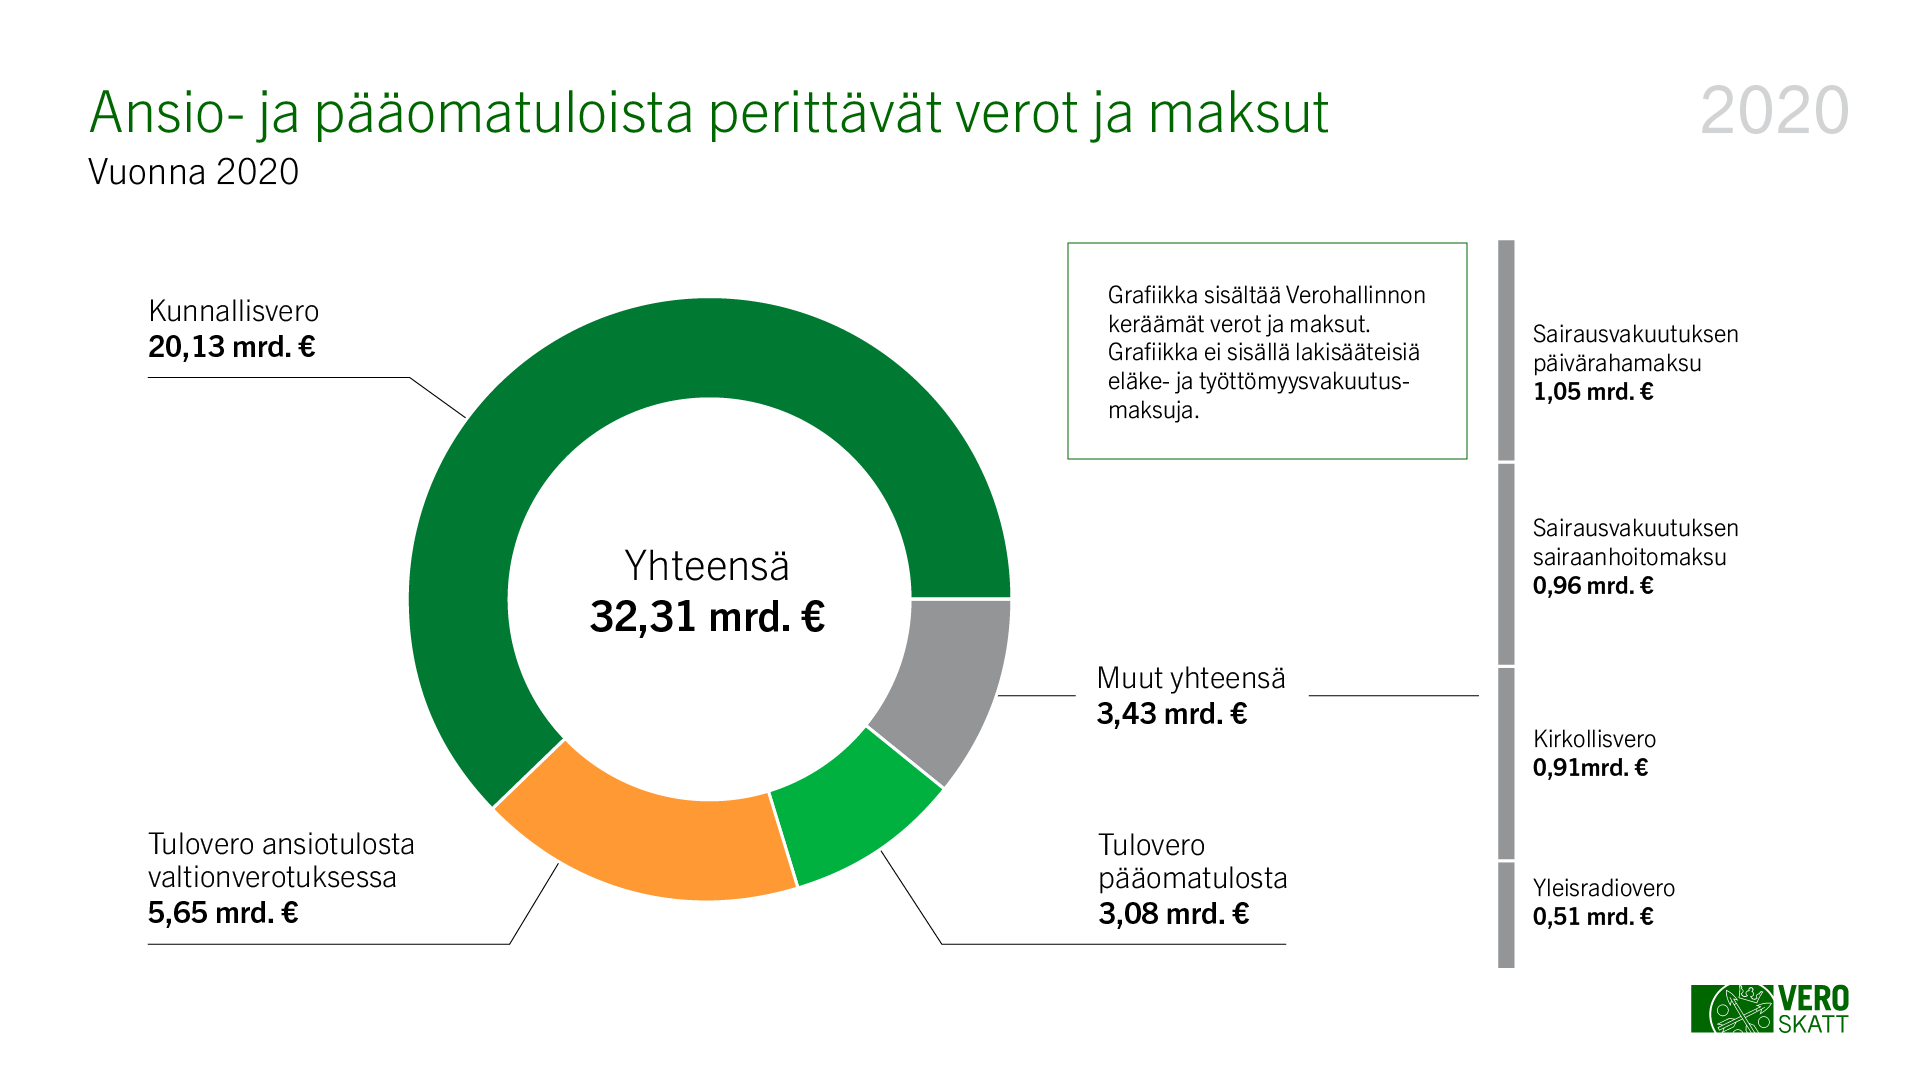 Vuonna 2020 ansio- ja pääomatuloista perittiin veroa yhteensä 32,31 miljardia euroa. Siitä isoin osa, 20,13 miljardia euroa, oli kunnallisveroa.